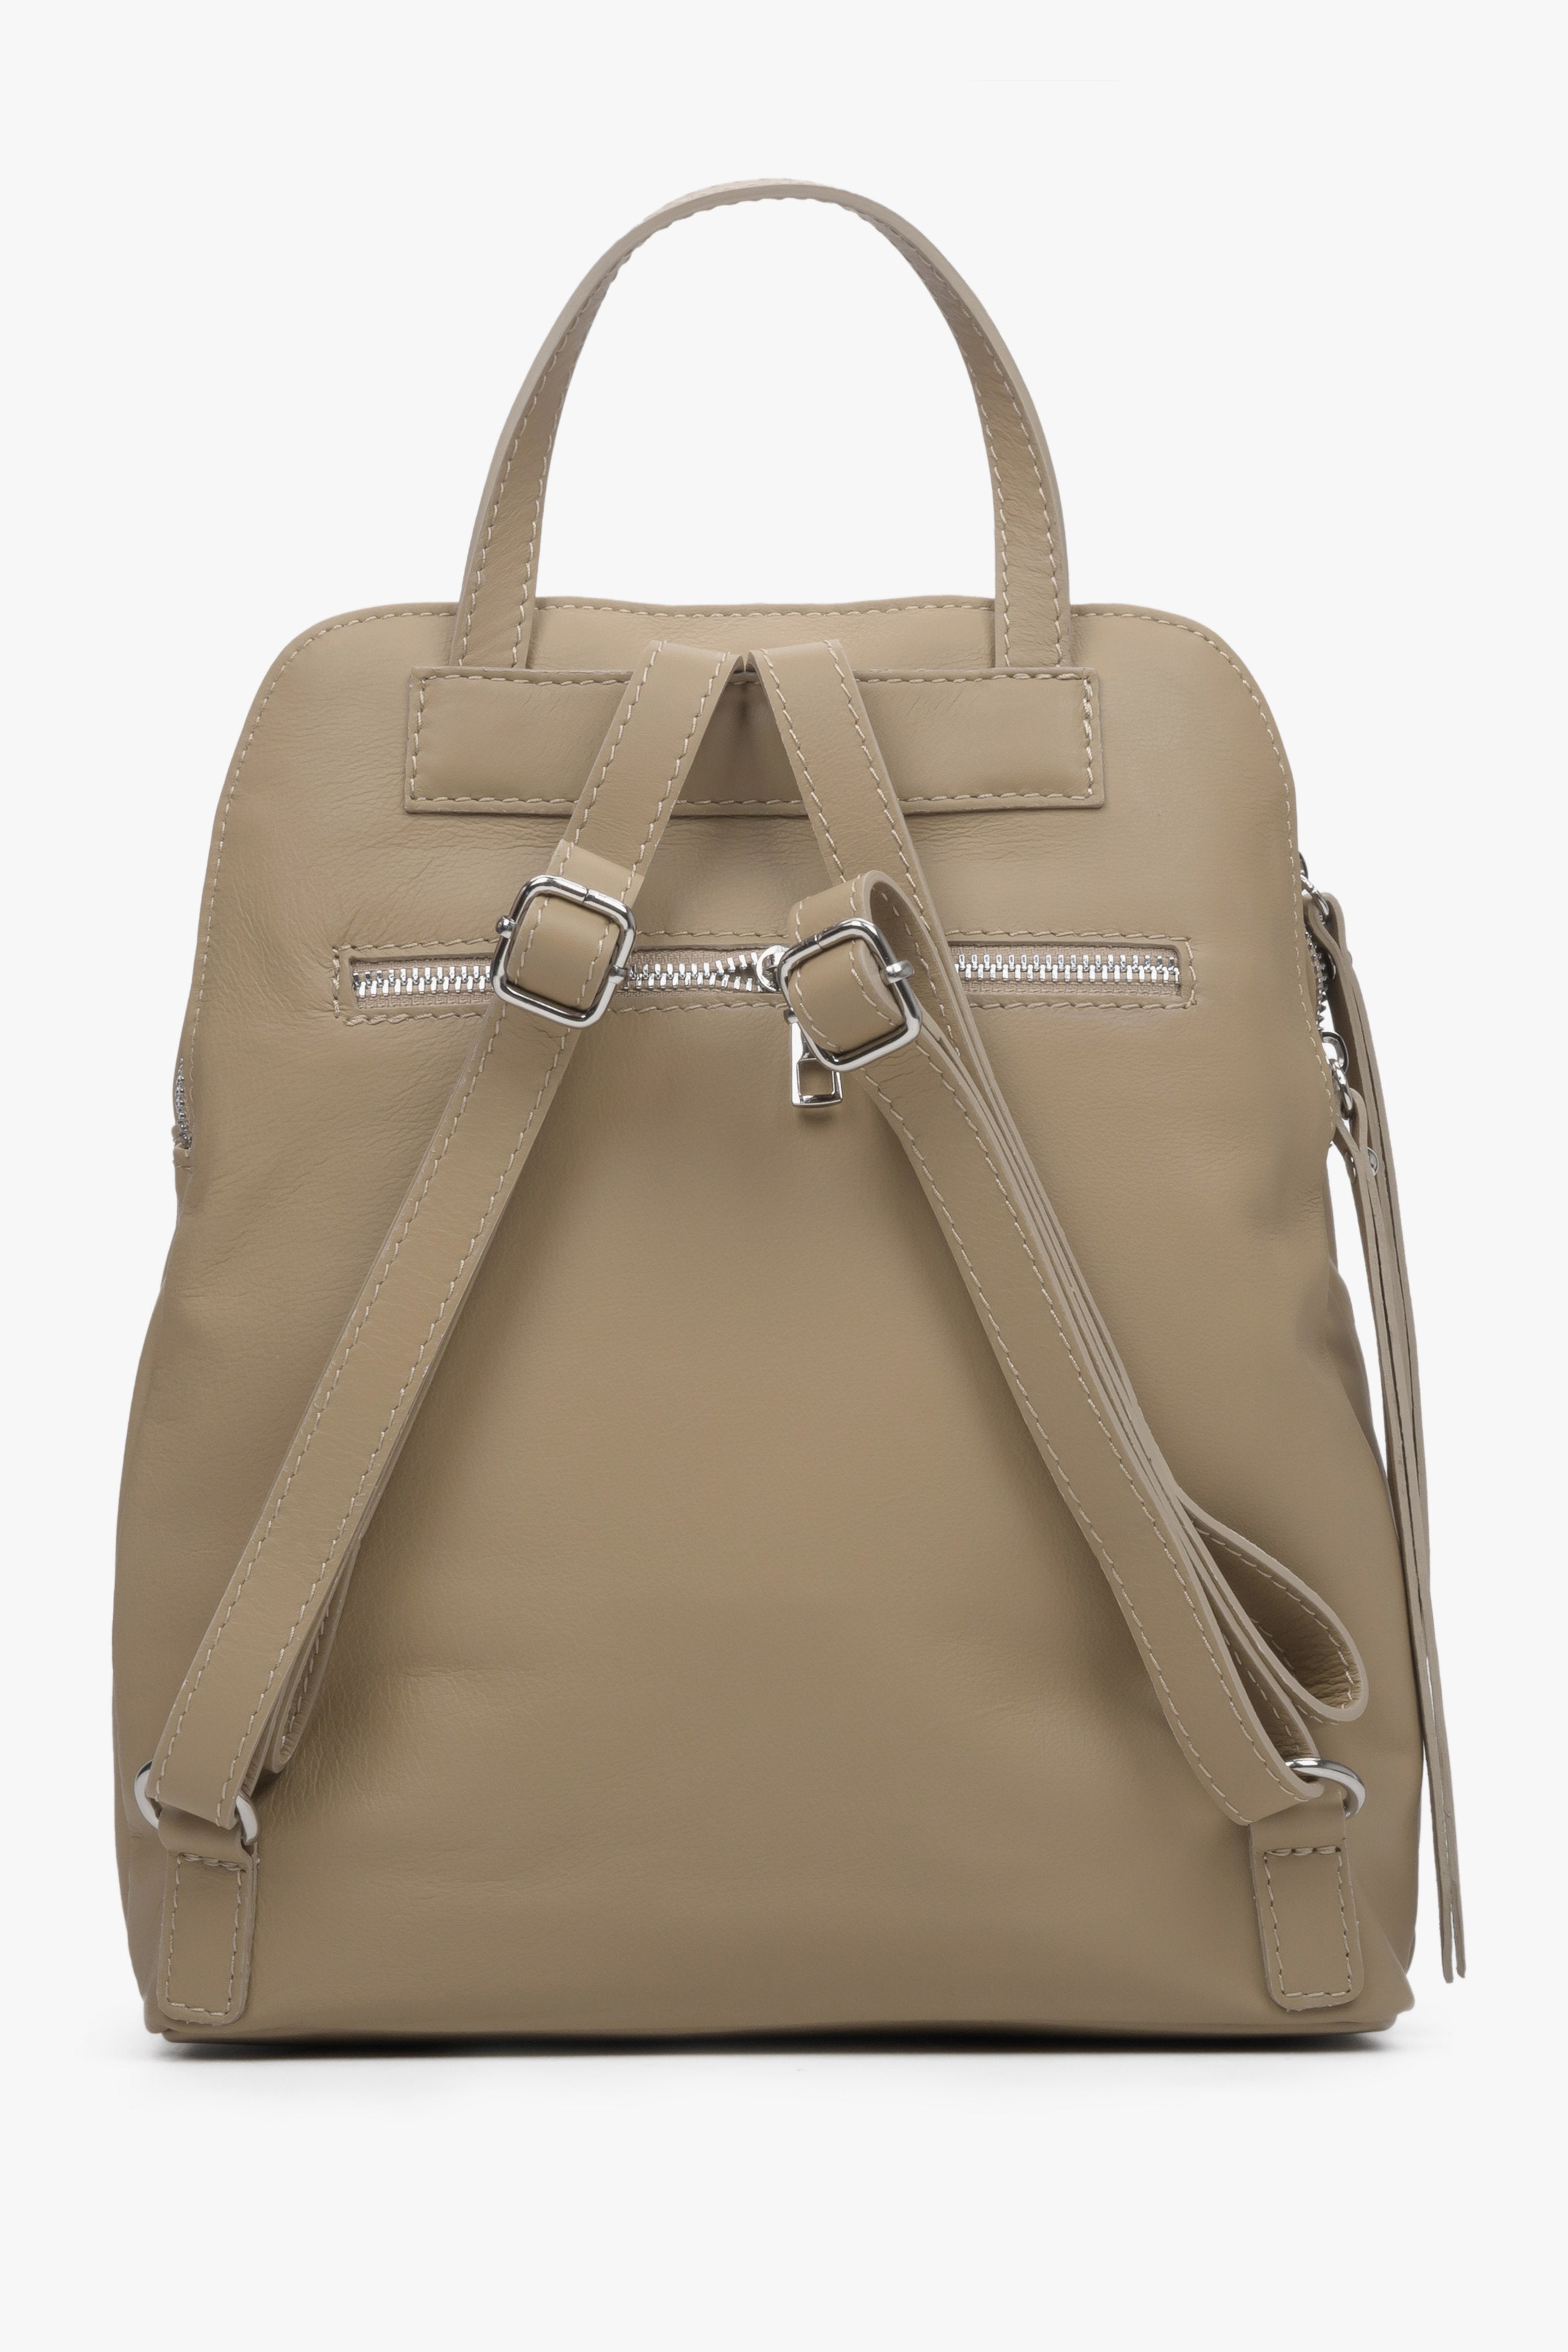 Skórzany, beżowy plecak damskie marki Estro - zbliżenie na tył modelu.